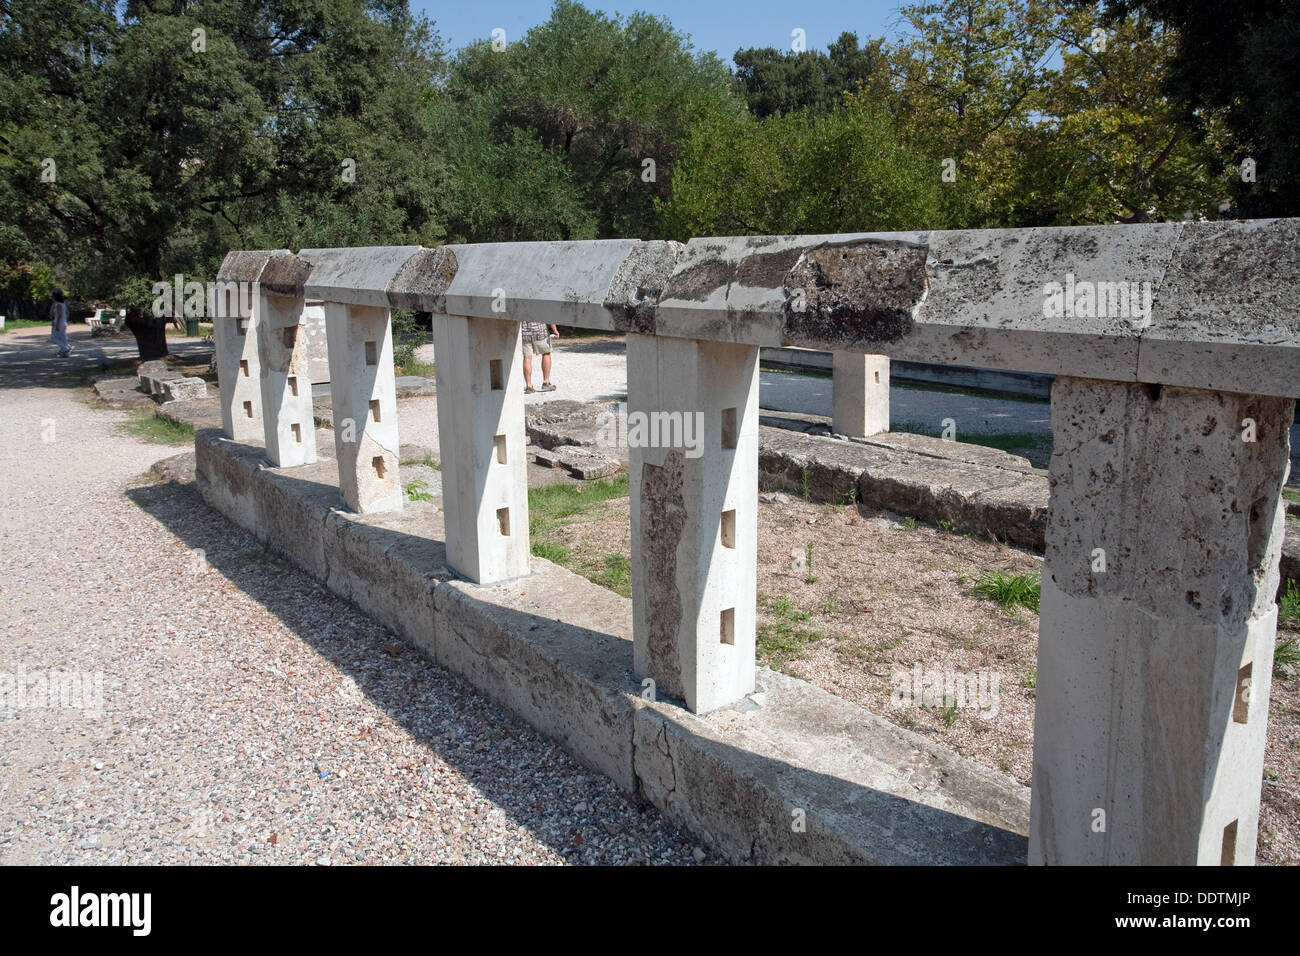 Il monumento della omonima Eroi nelle agorà greca, Atene, Grecia. Artista: Samuel Magal Foto Stock